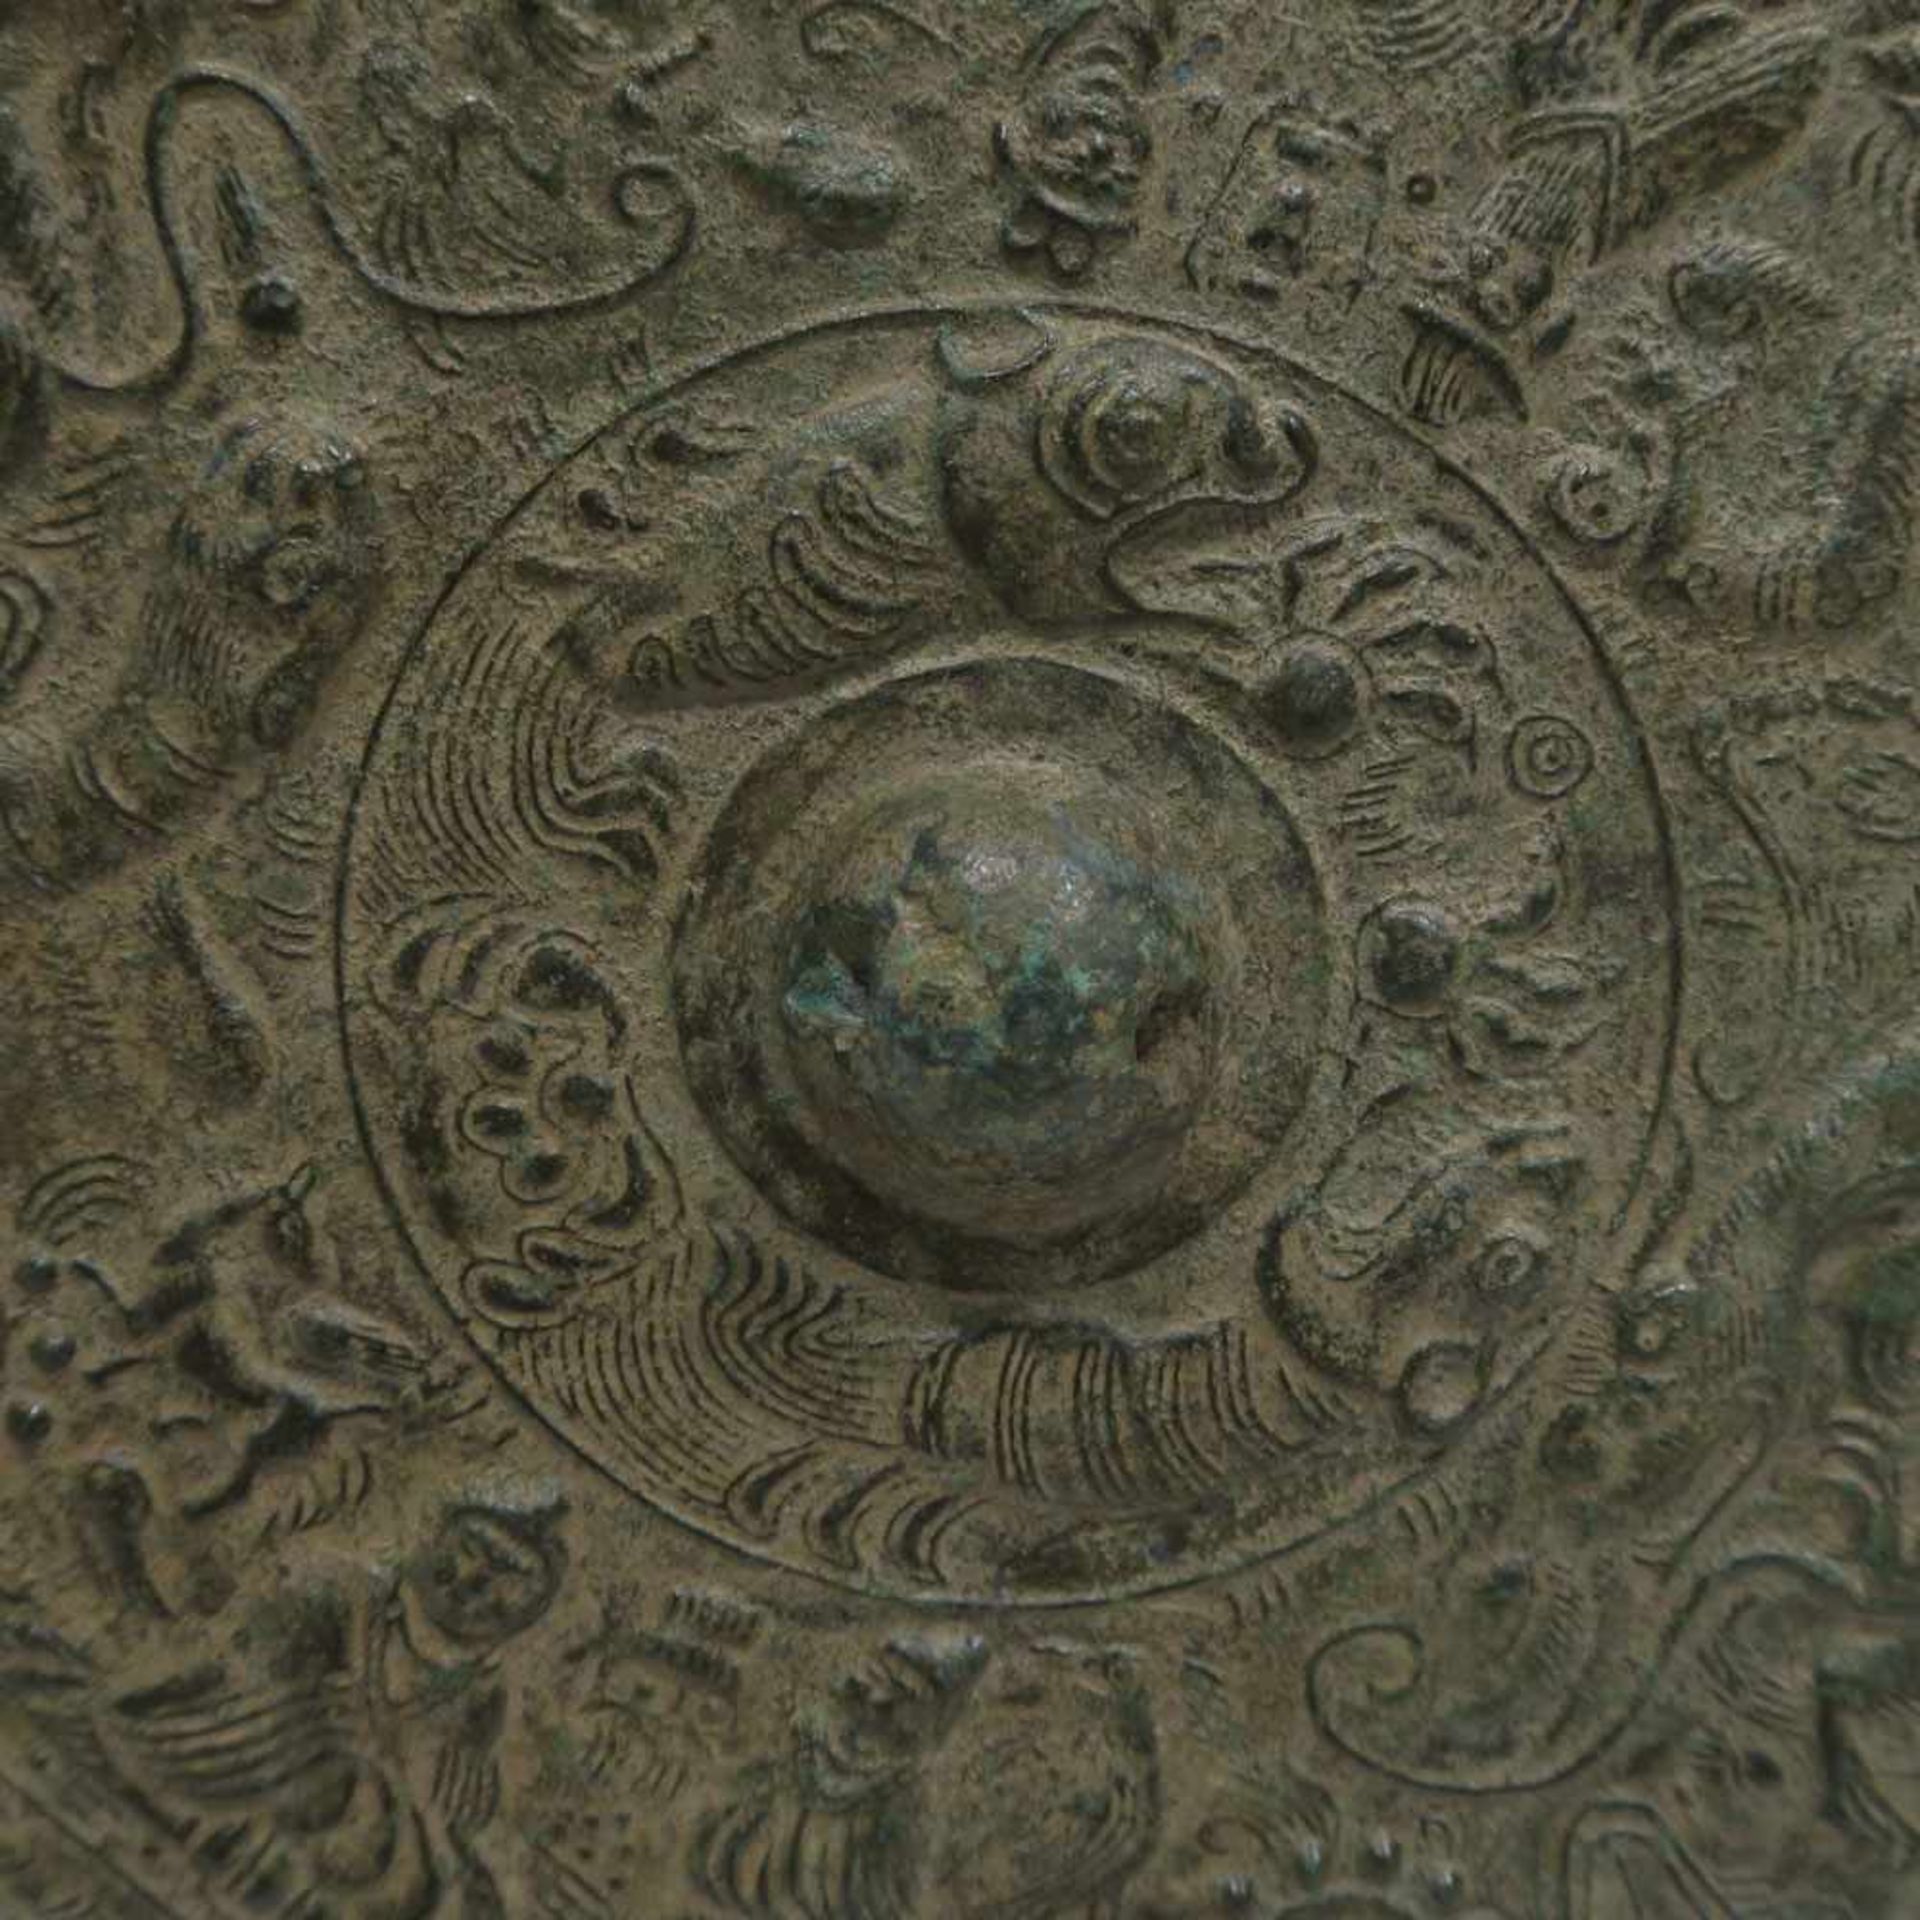 BronzespiegelChina. Bronze, grünlich patiniert. Reliefdekor mit Figuren, Tigern u.a. Ø 22,5 cm. - Bild 4 aus 8